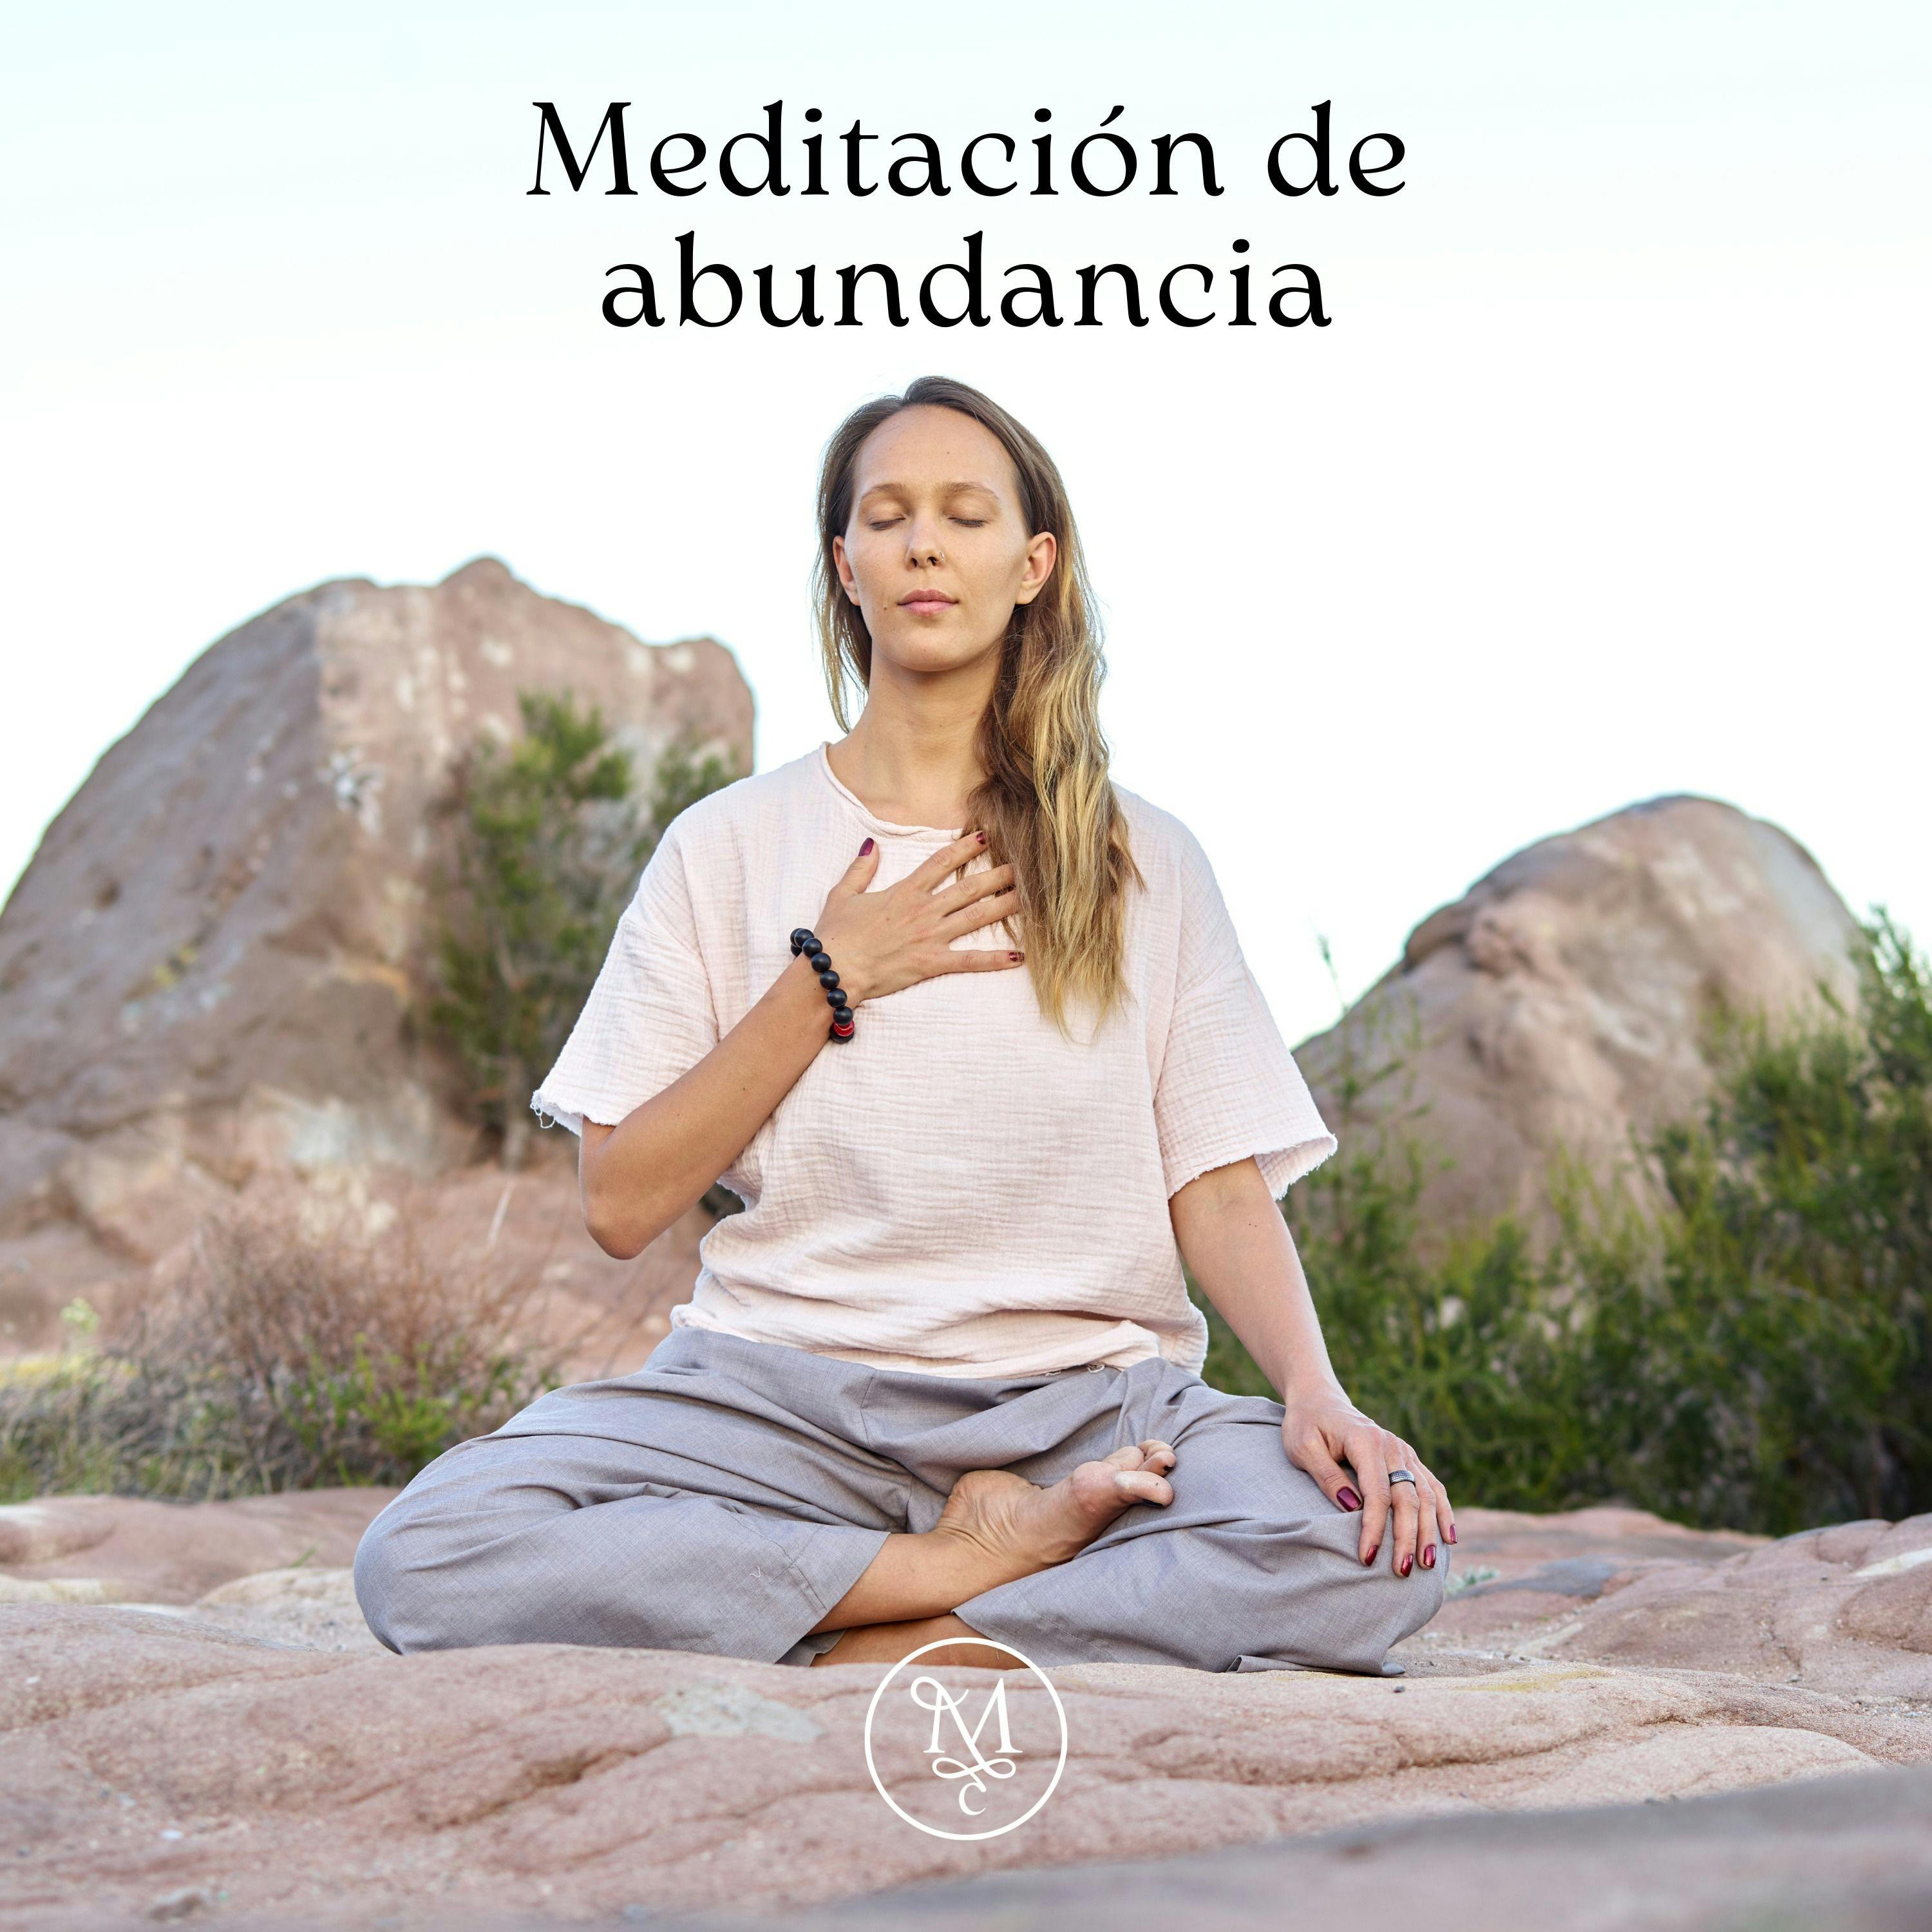 Meditación de abundancia 🎯💸🧲 | 12 min | Encuentra tu paz interior ✨